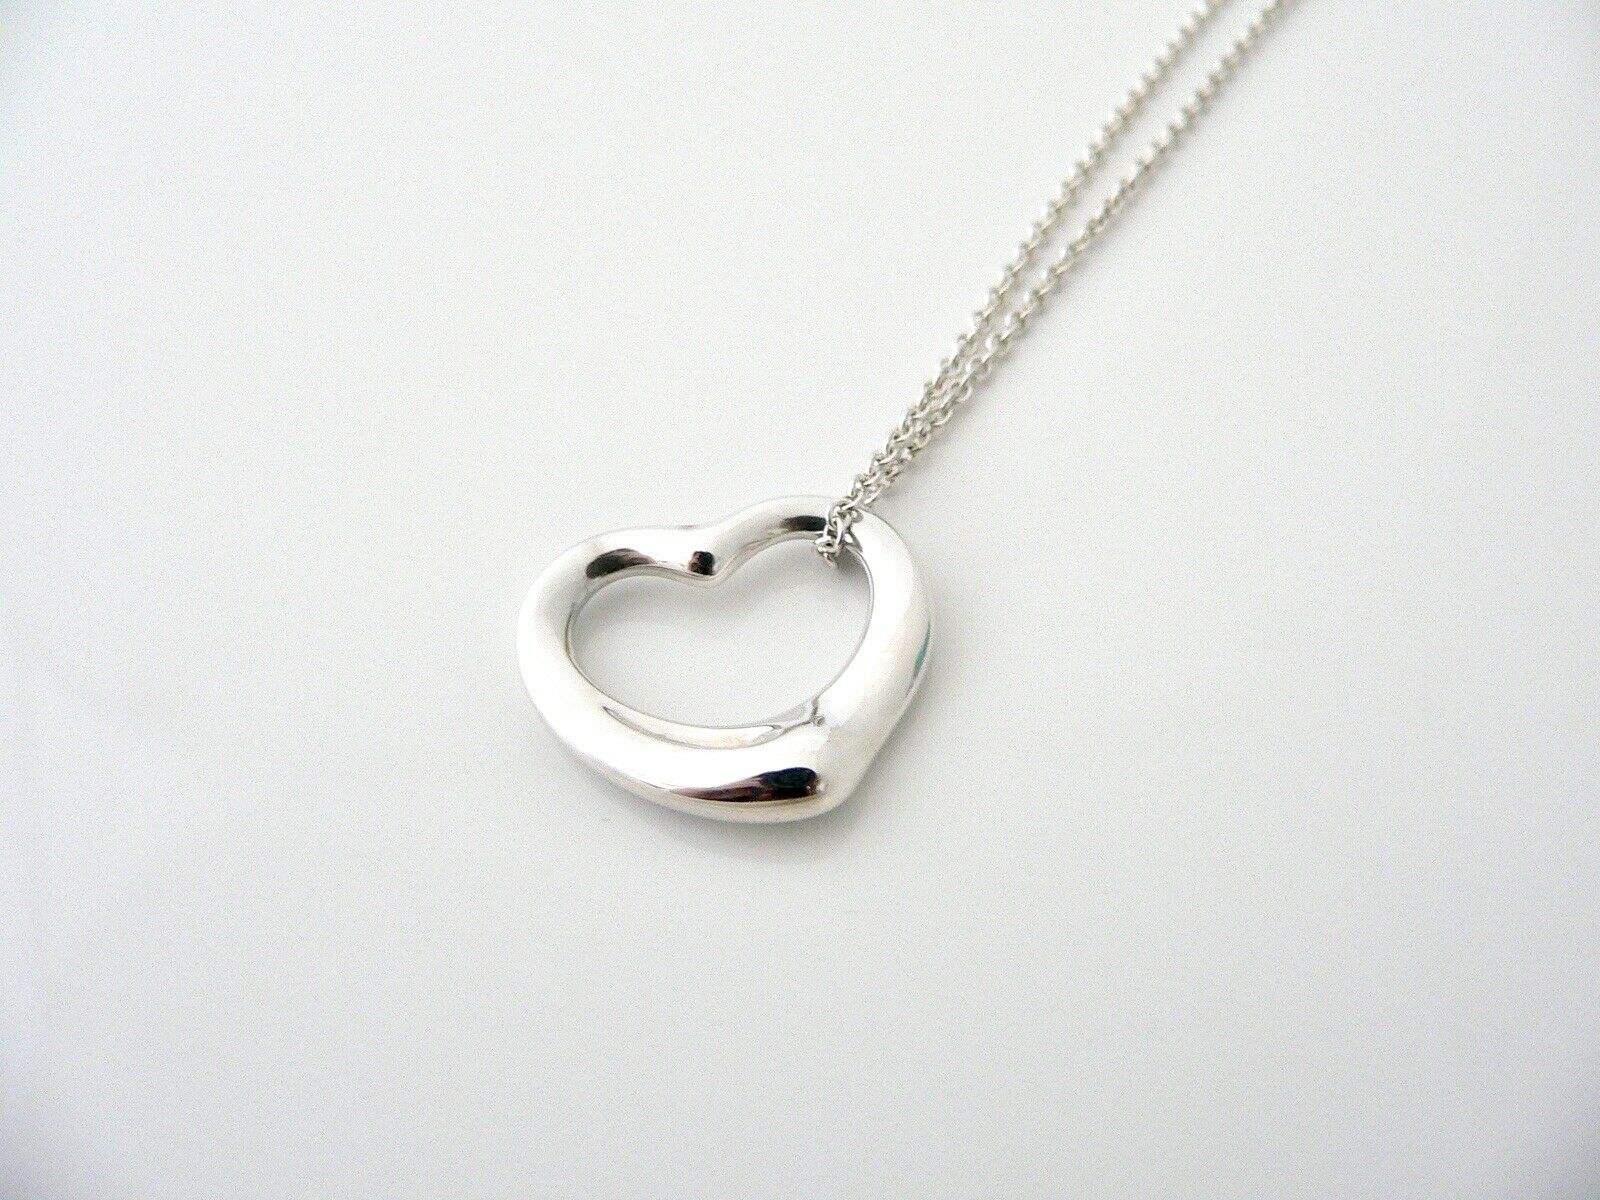 Tiffany & Co Open Heart Necklace Pendant Charm Chain Peretti Gift Love Peretti